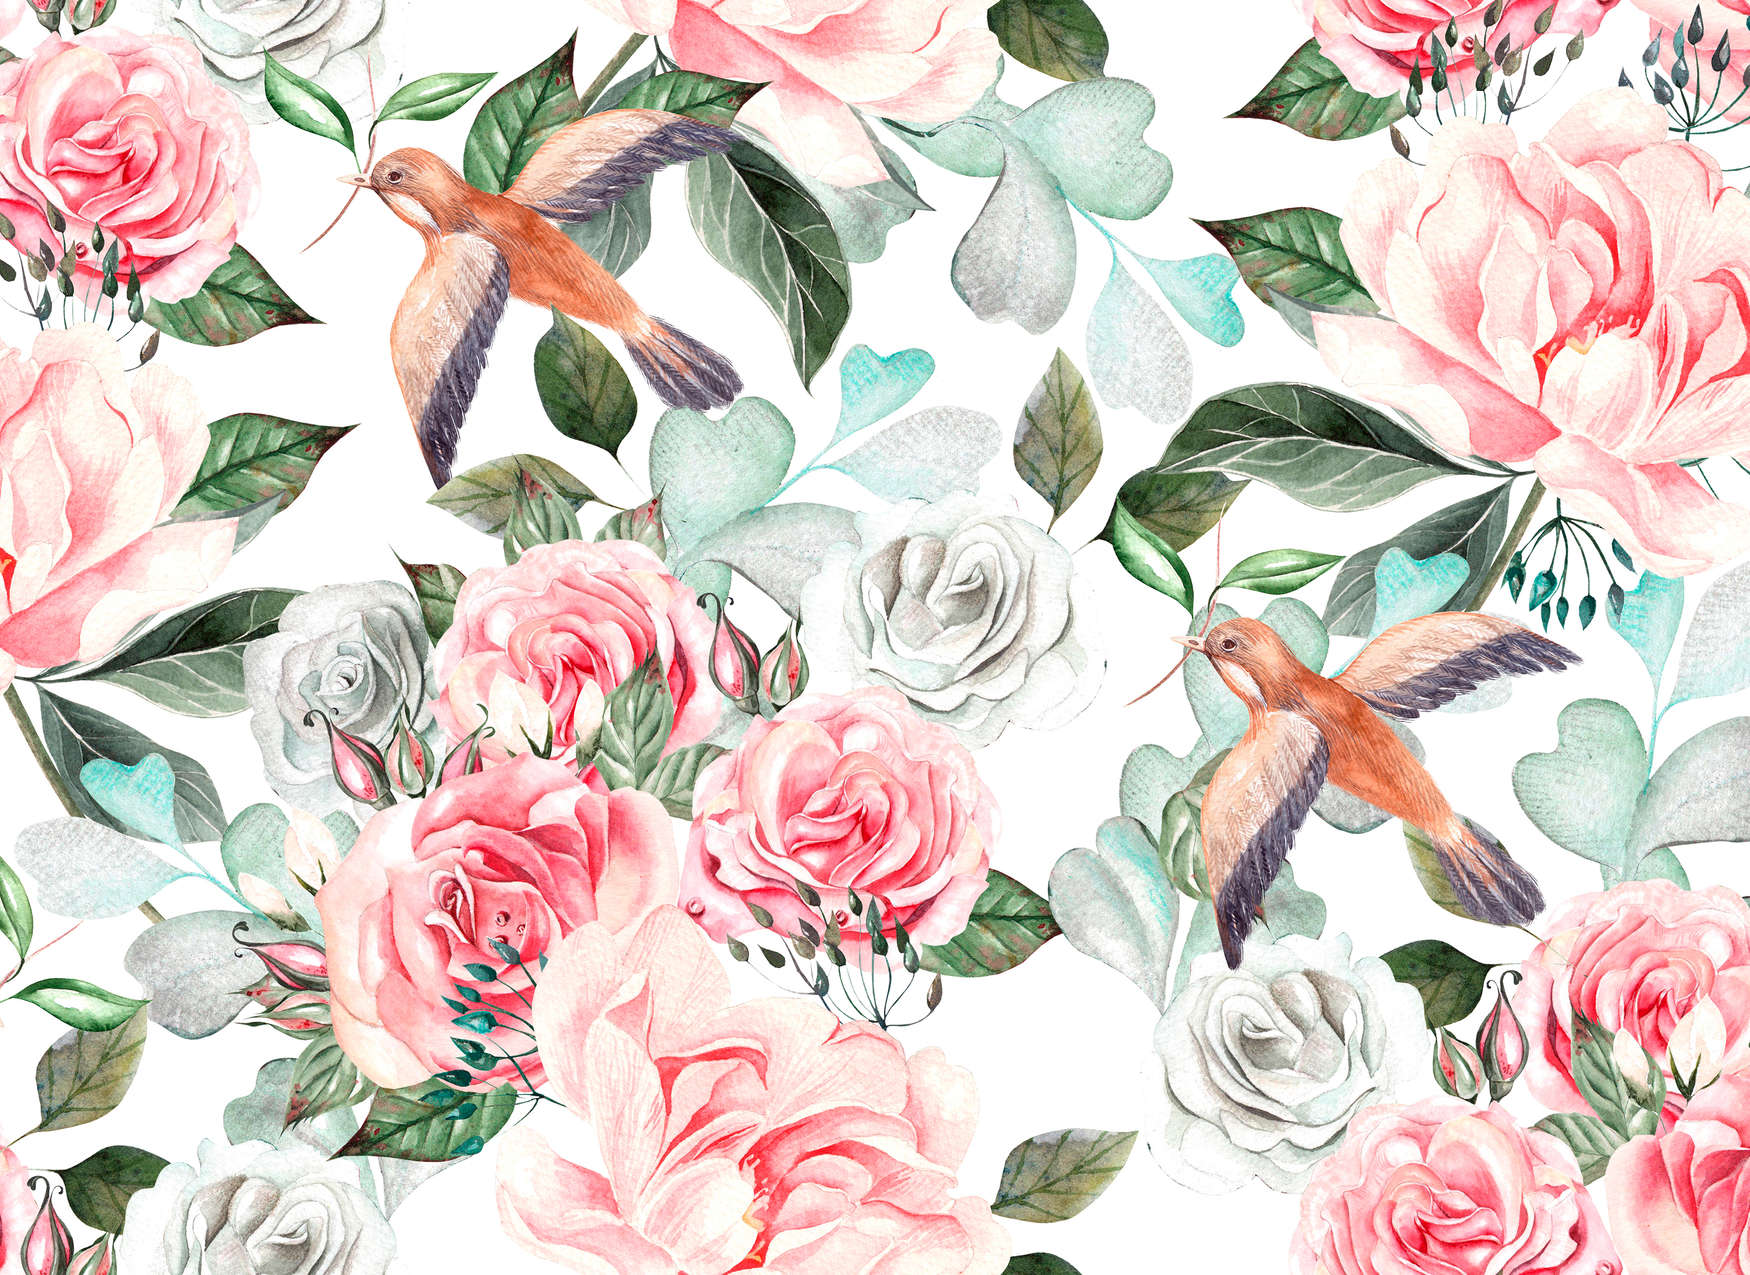             Papier peint panoramique vintage avec des fleurs et des oiseaux - multicolore, rose, vert
        